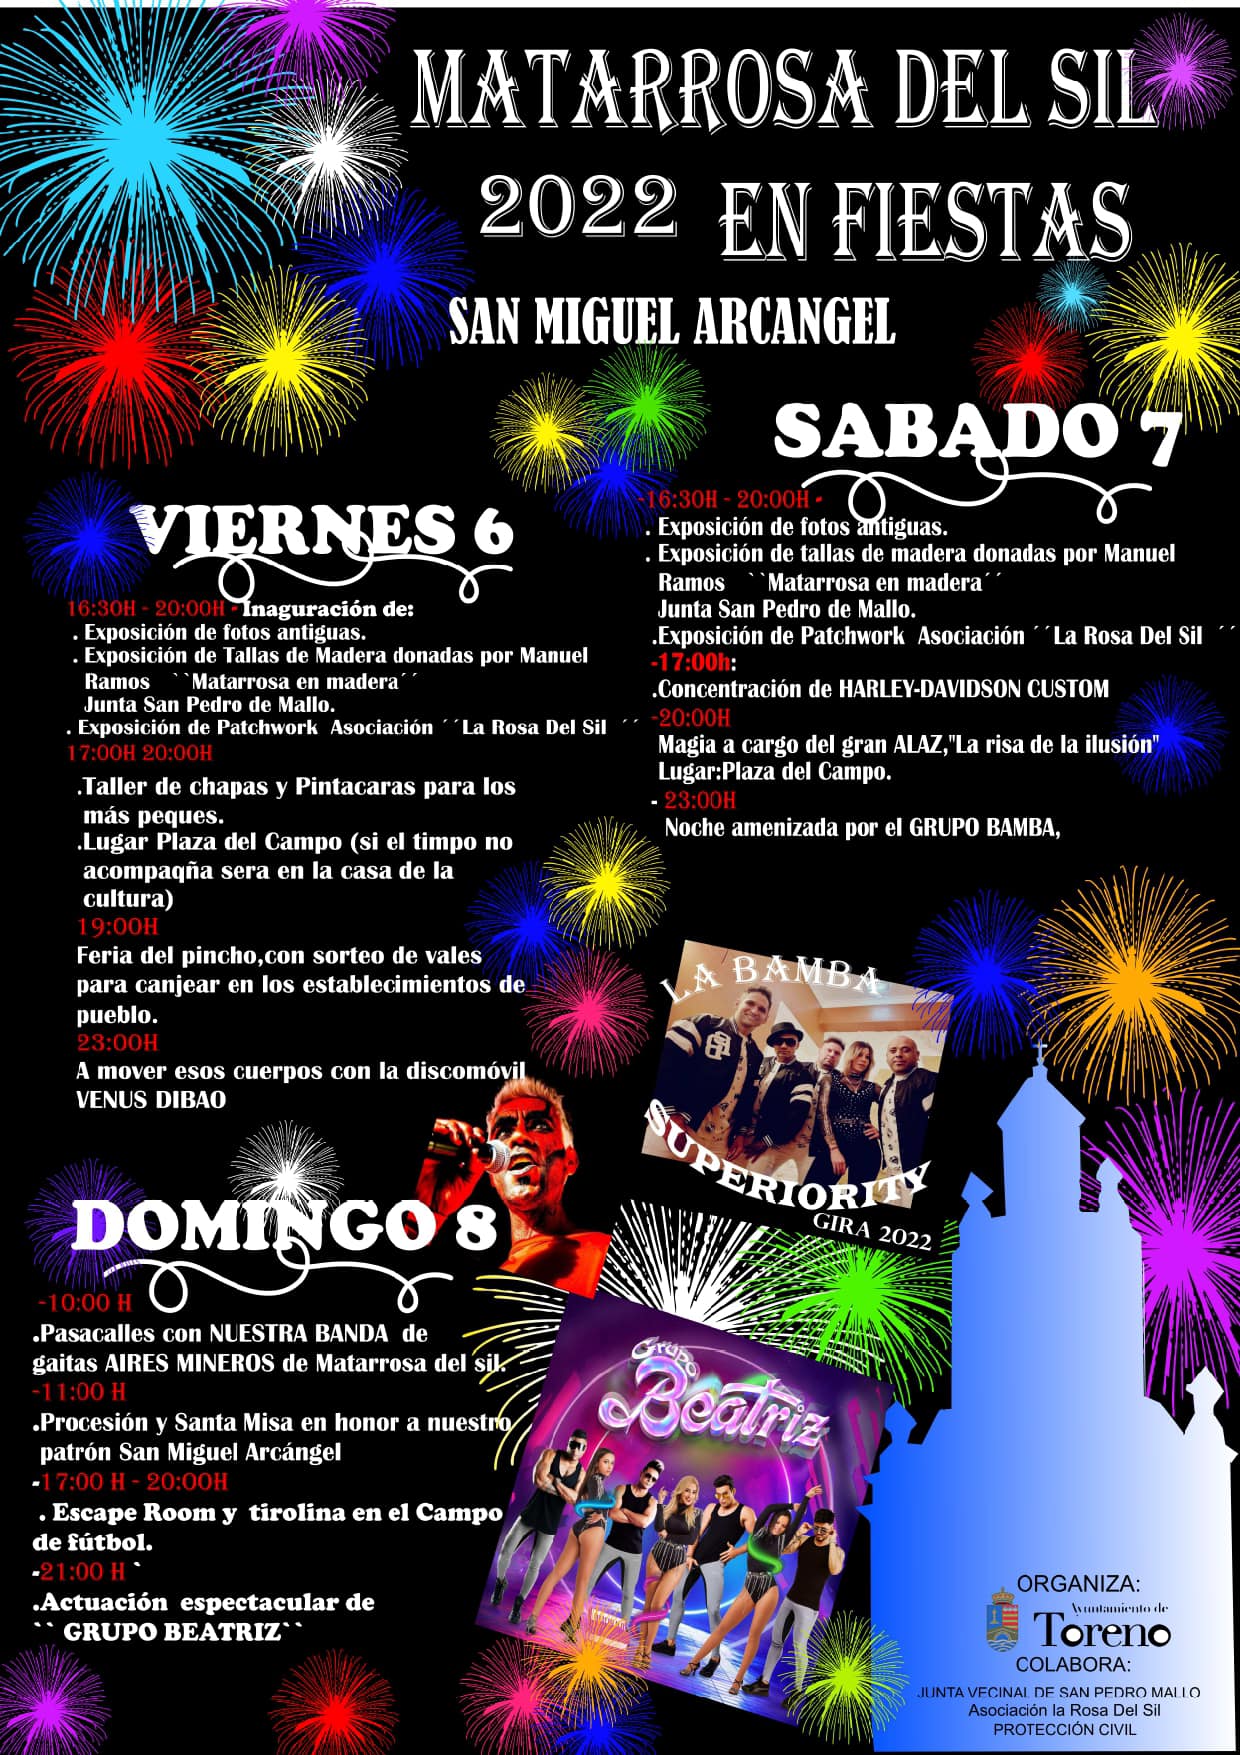 Fiestas en Matarrosa del Sil en honor a San Miguel Arcángel del 6 al 8 de mayo de 2022 2